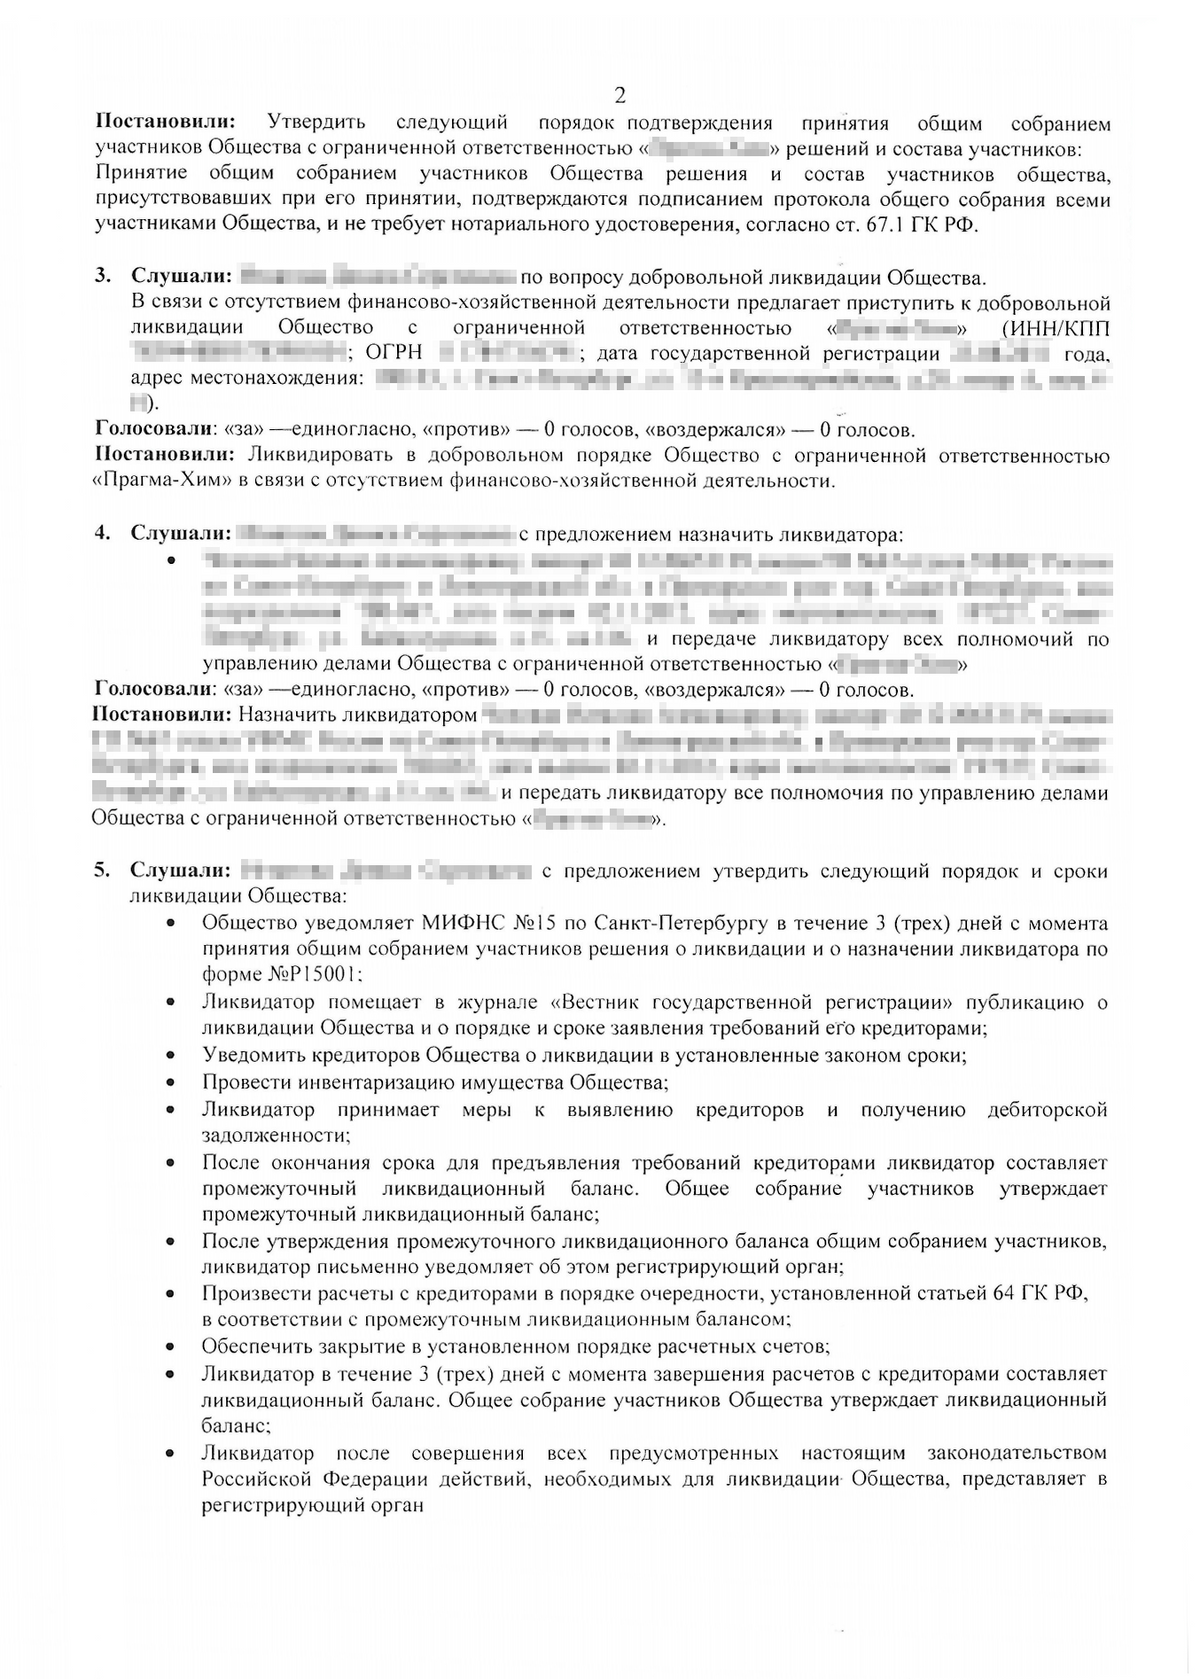 Гражданский кодекс Российской Федерации Статья 63. Порядок ликвидации юридического лица